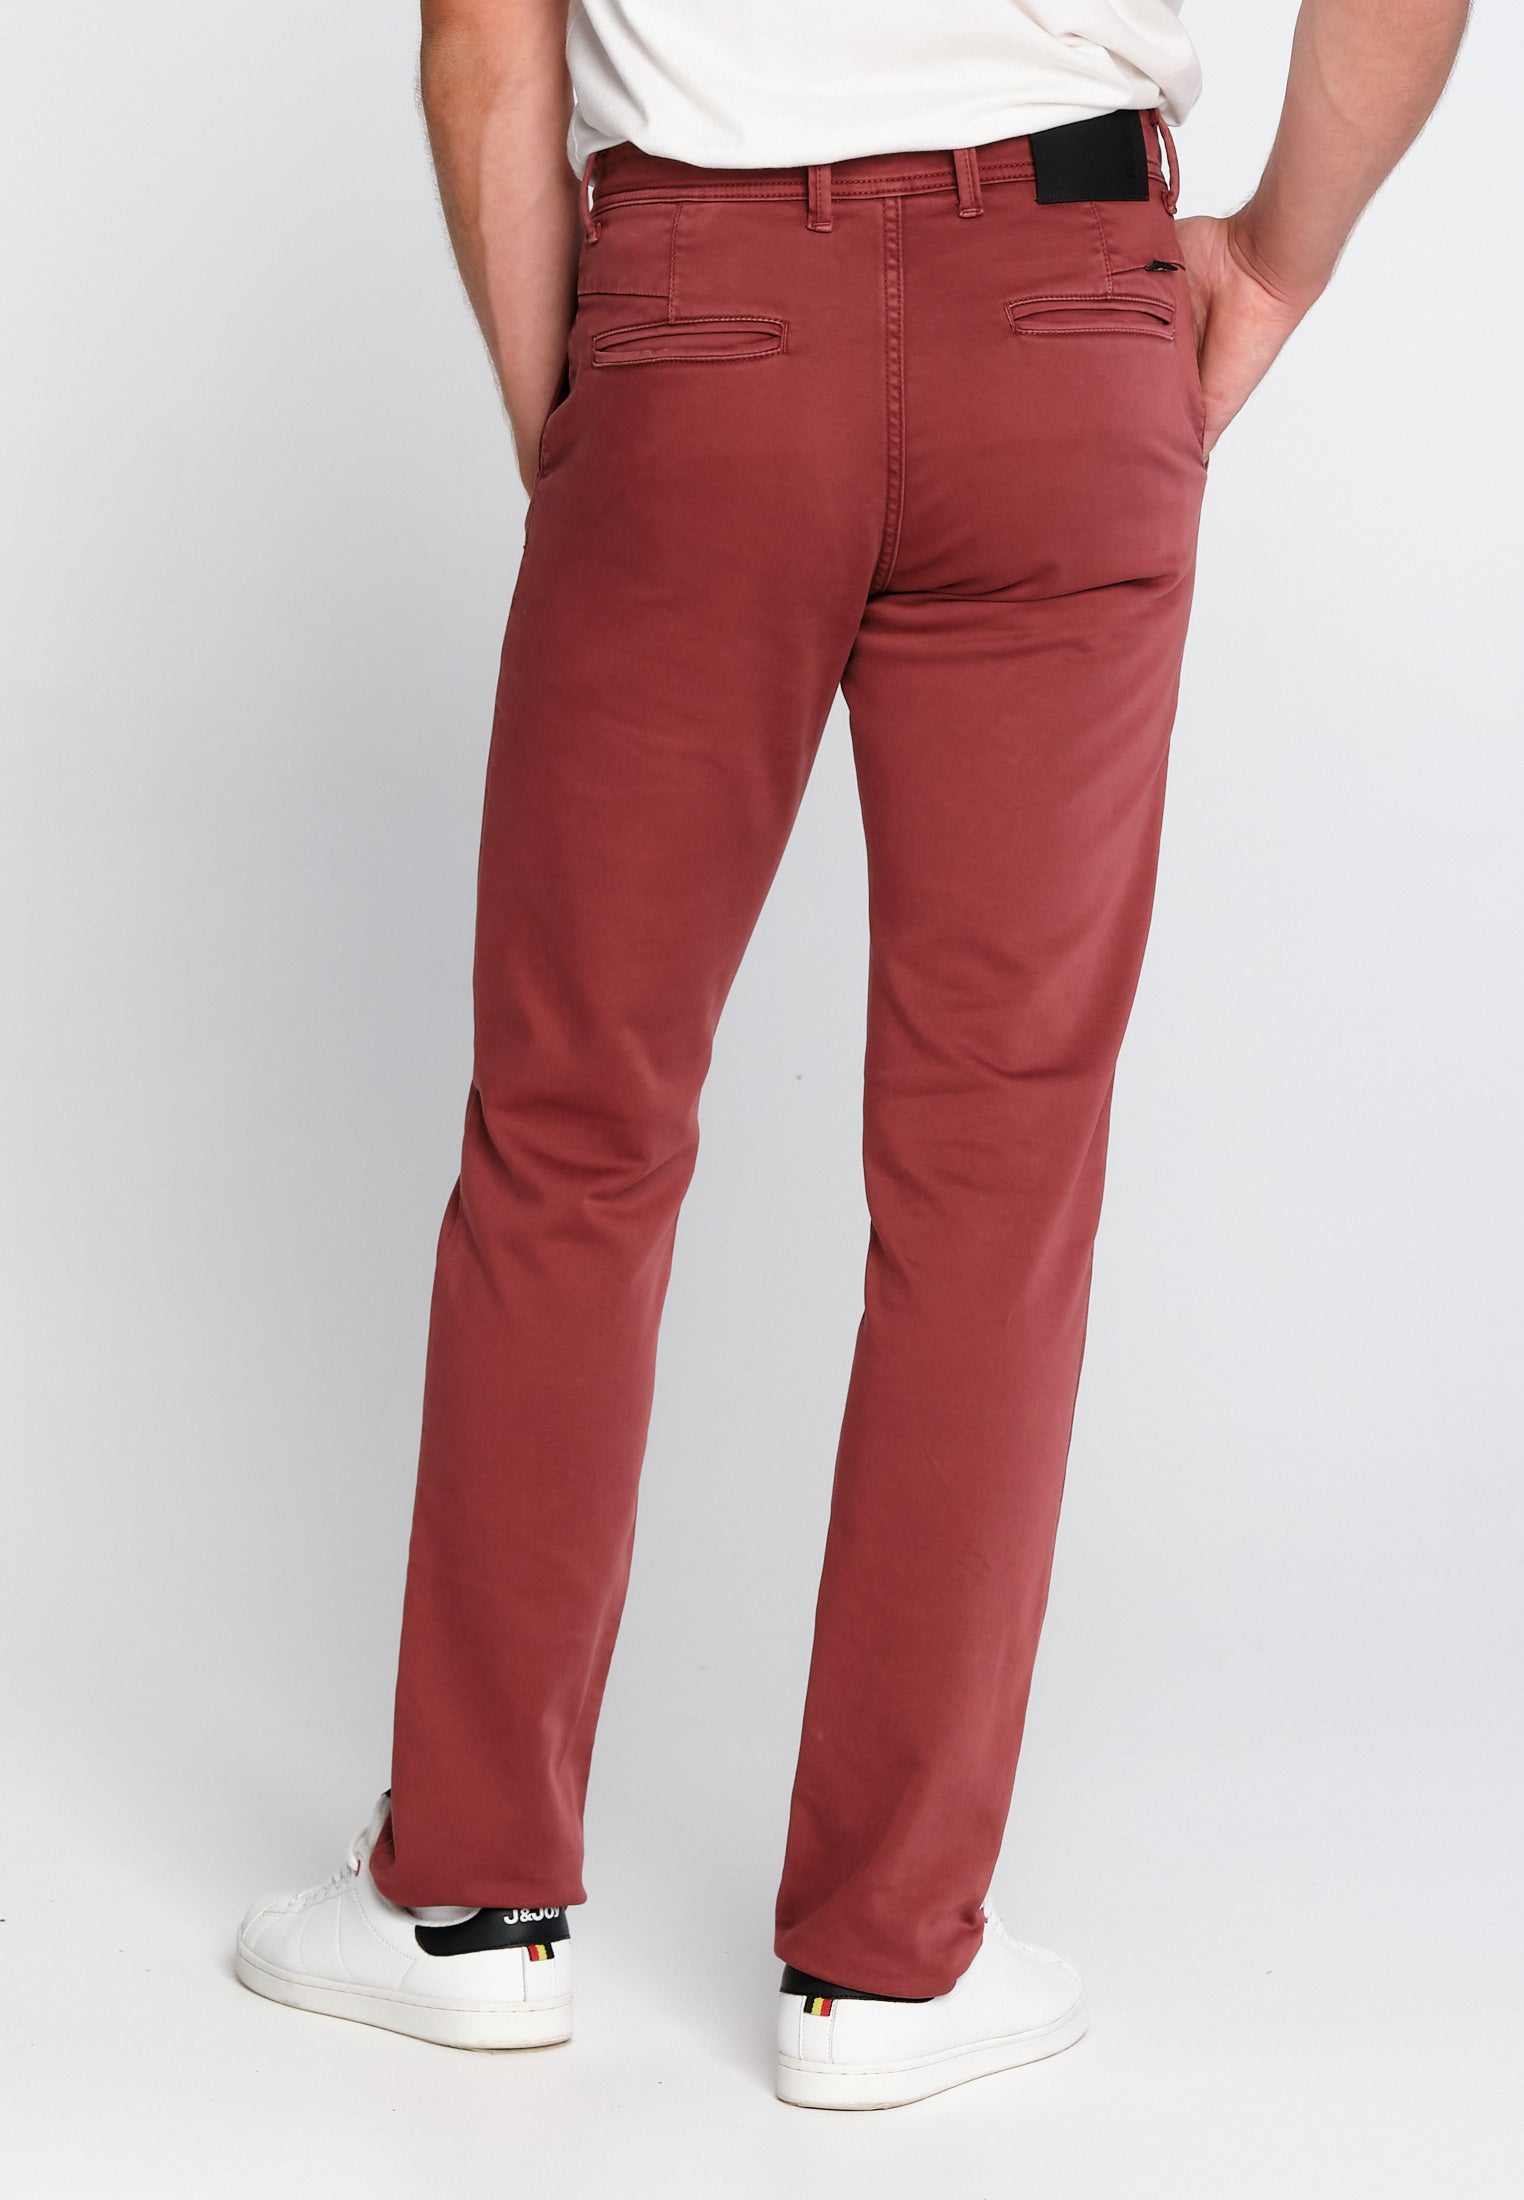 Pantalon Homme 02 Chino Red Brown | J&JOY.